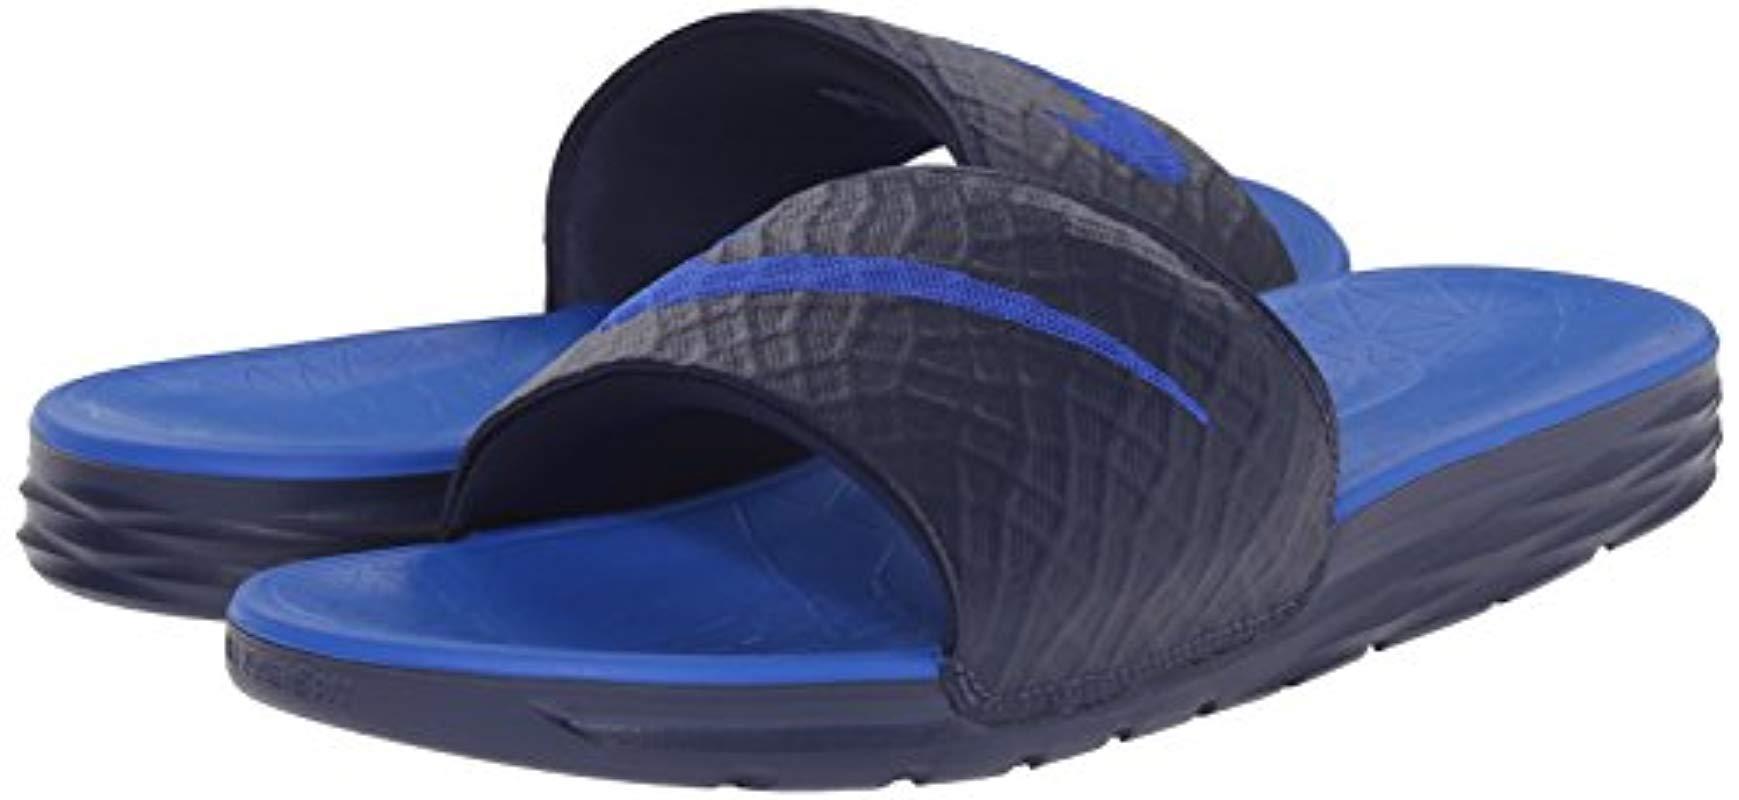 Benassi Solarsoft - Chanclas Hombre Nike de hombre de color Azul | Lyst